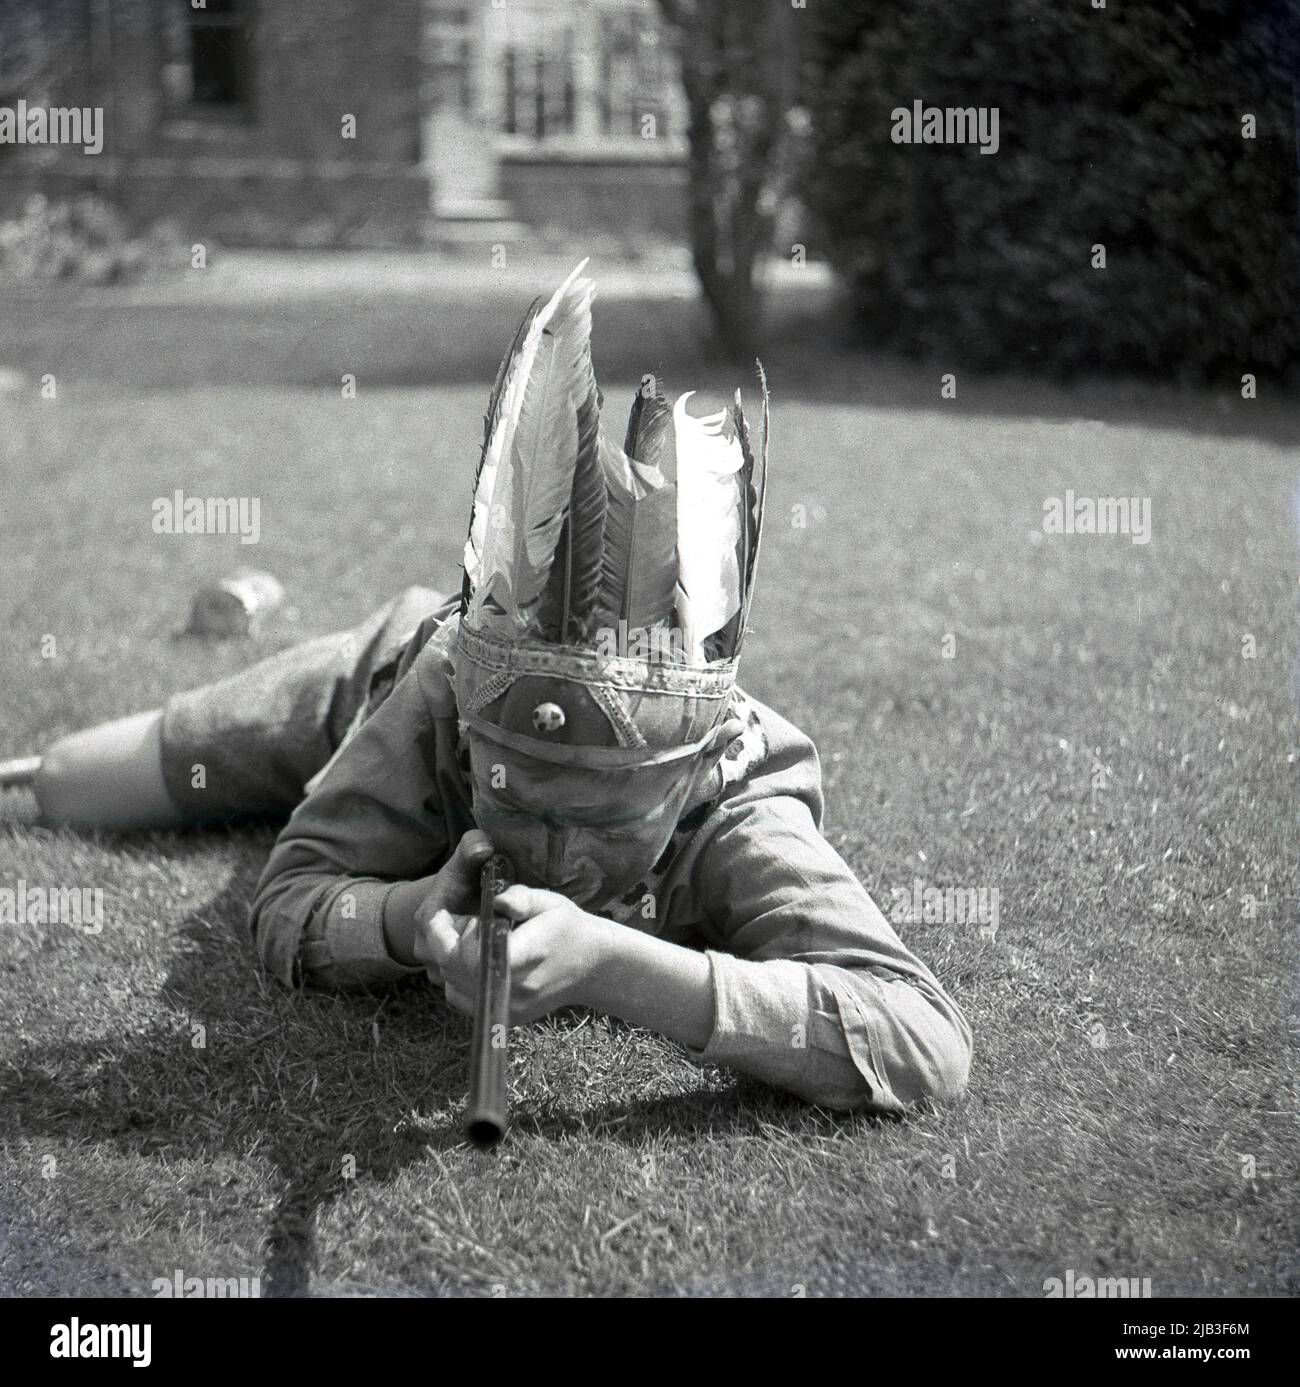 1950s, historisch, draußen im Garten, ein Junge, der spielt, vorgibt, ein gebürtiger oder roter inder zu sein, auf dem Gras liegend, mit seinem Spielzeuggewehr, Federhut und gemaltem Gesicht, England, Großbritannien. In Großbritannien nach dem Krieg war das Spielen von Cowboys und indianern ein beliebtes Spiel für junge Kinder. Stockfoto